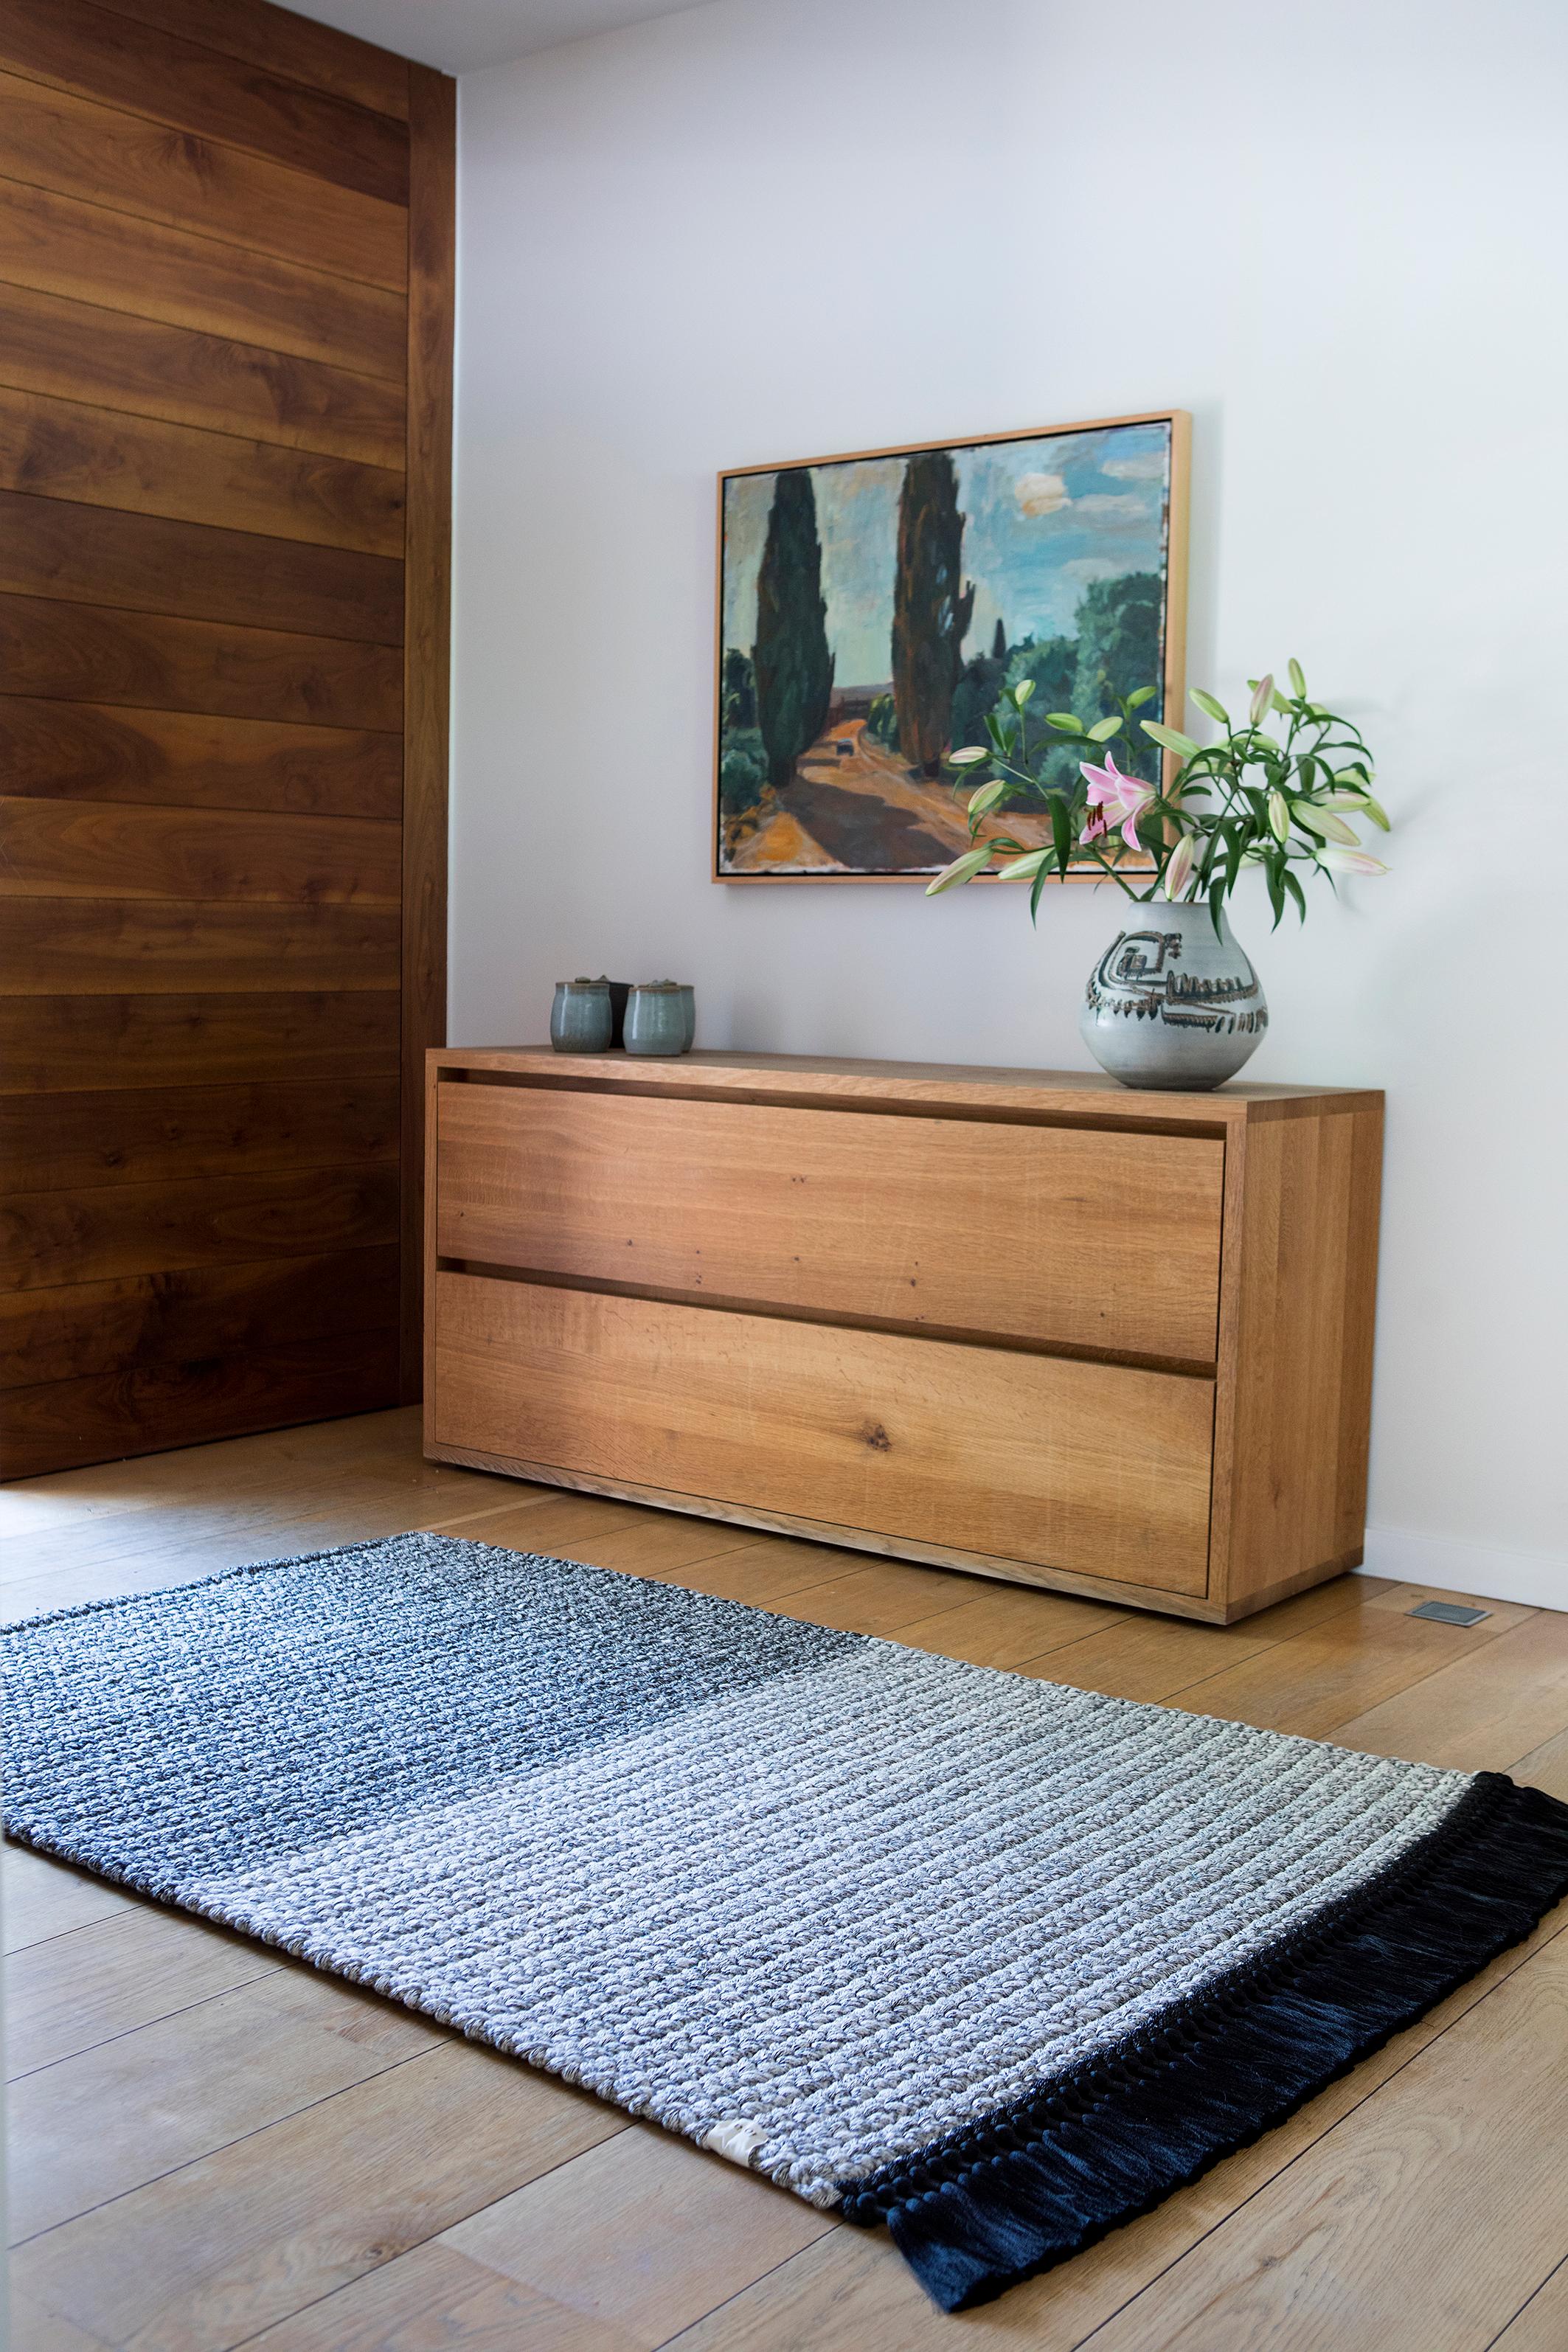 IOTA-Teppiche sind dick, weich, handgestrickt und luxuriös, dreimal dicker als ein Standardteppich. Die Two Tone Medium Teppiche erzeugen einen subtilen Farbverlauf, der jeden Raum erhellt. Sie eignen sich sowohl für eine intime Ecke im Wohnbereich